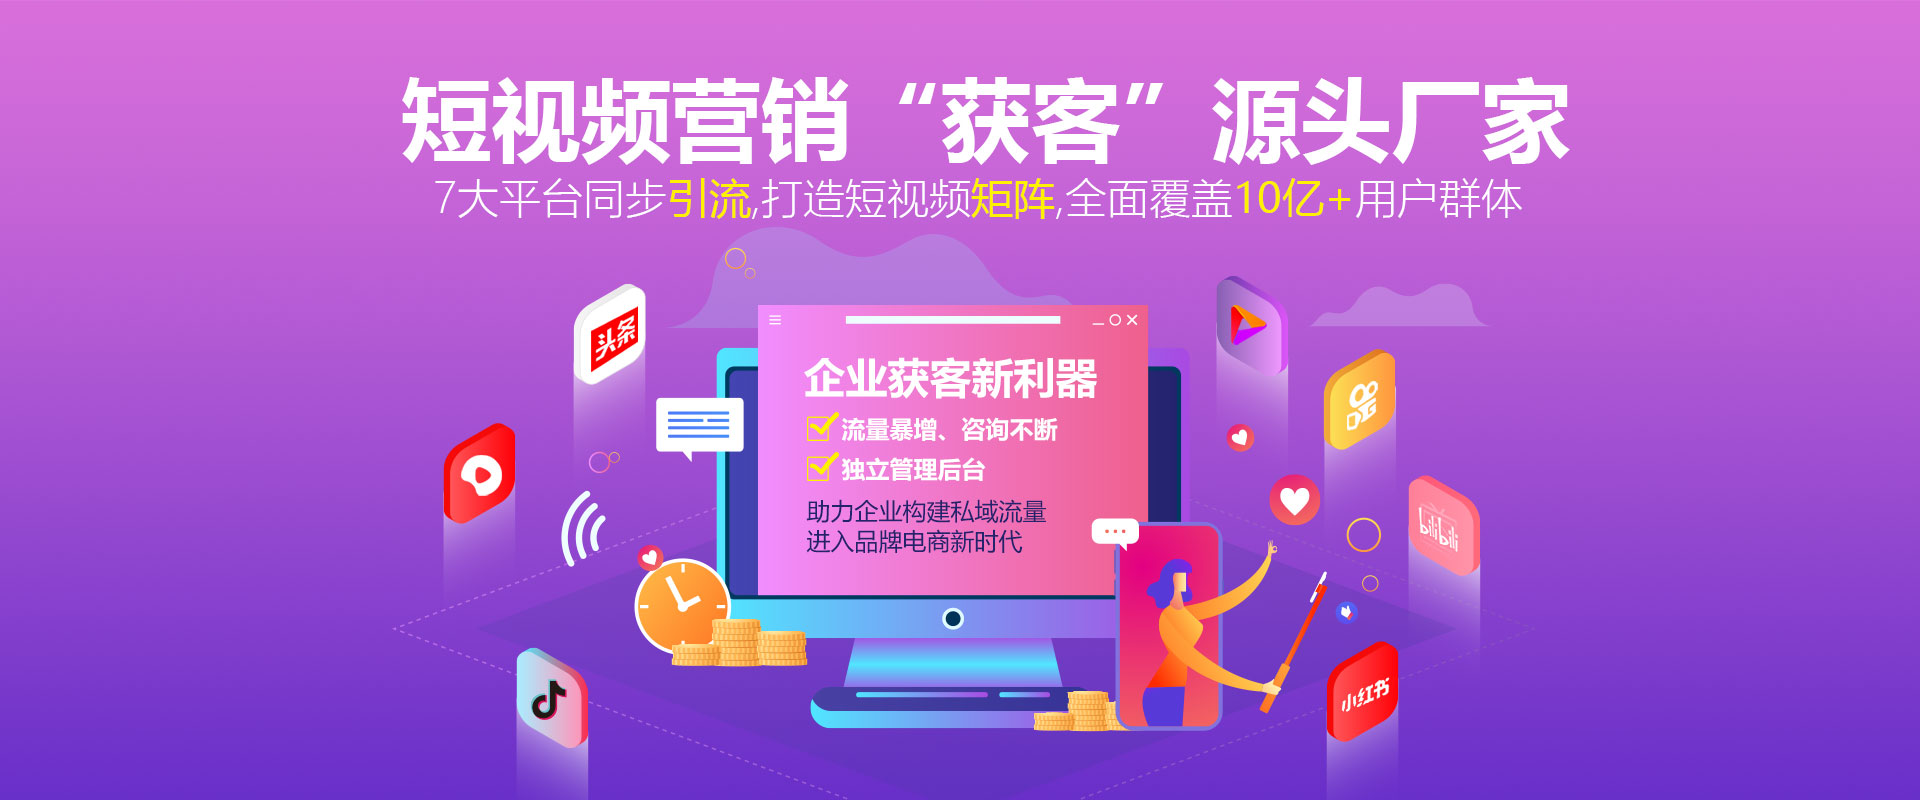 全网营销是什么?深圳企业如何做好全网营销?